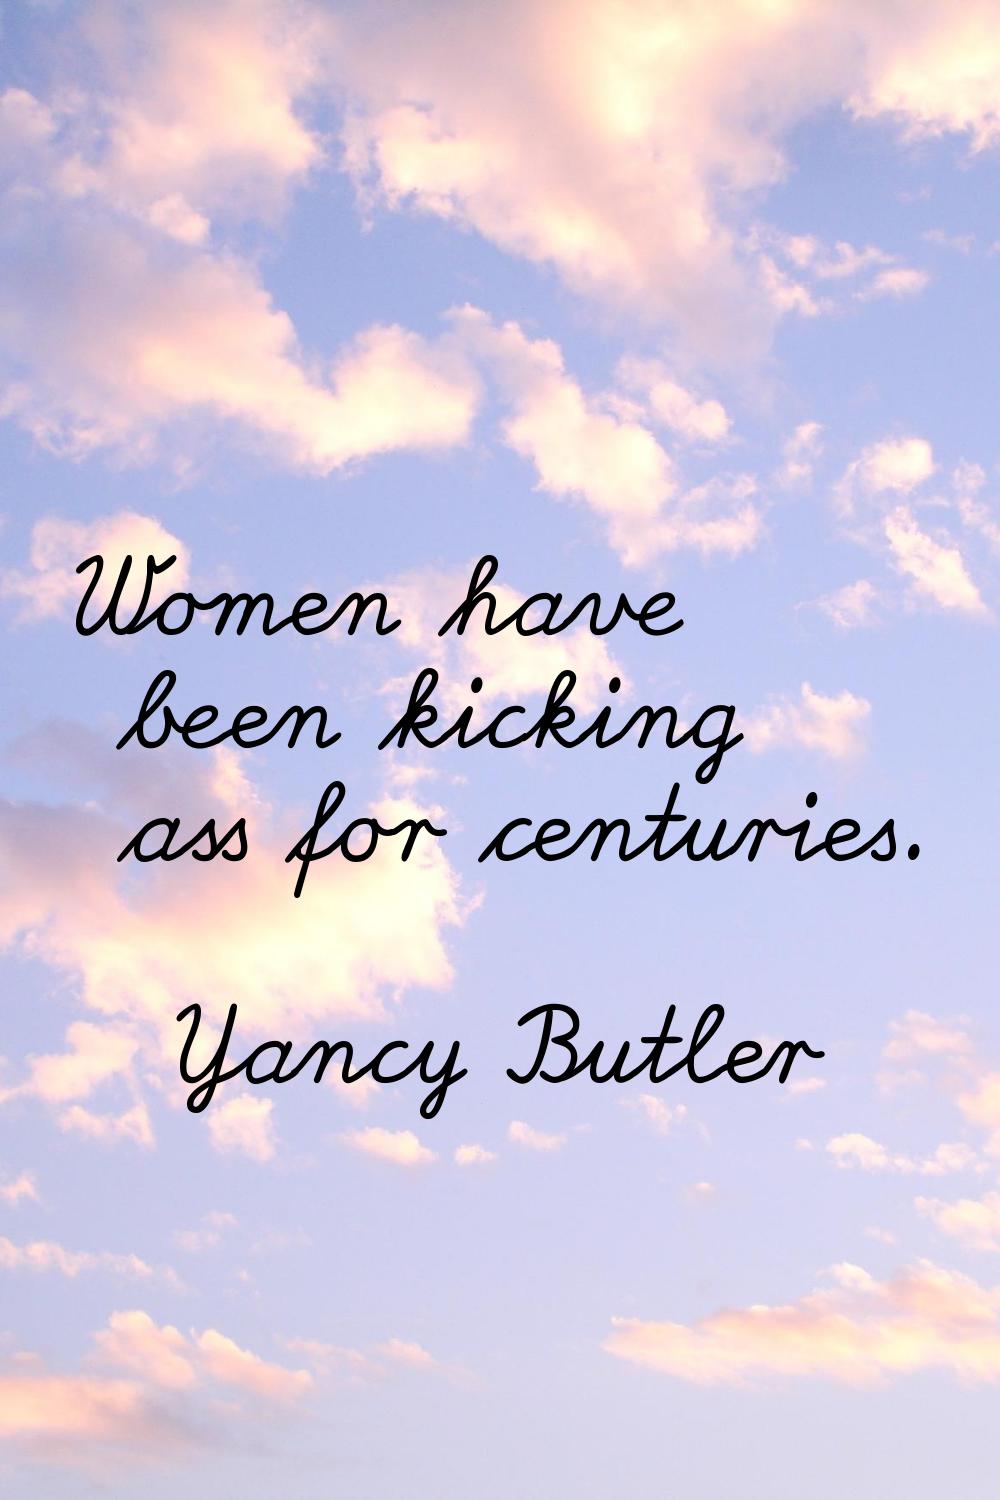 Women have been kicking ass for centuries.